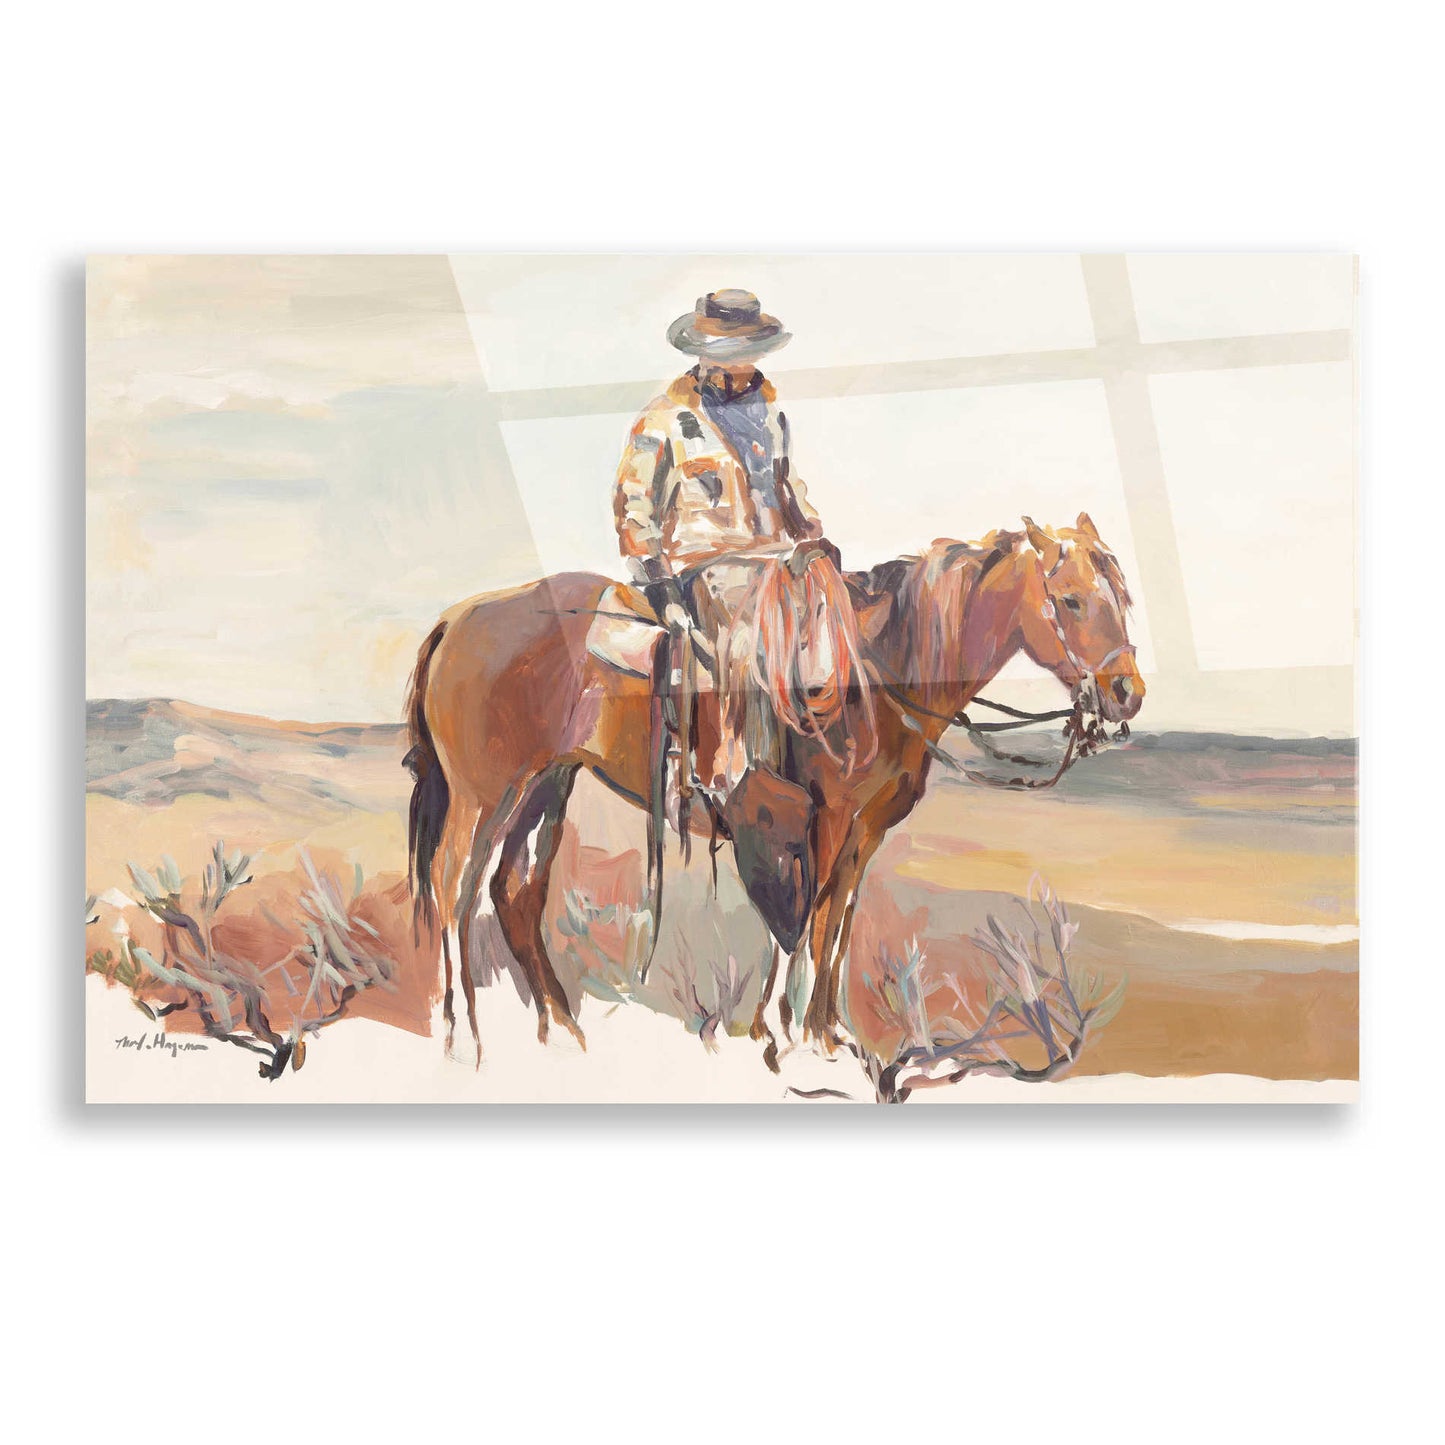 Epic Art 'Western Rider Warm' by Marilyn Hageman, Acrylic Glass Wall Art,16x12